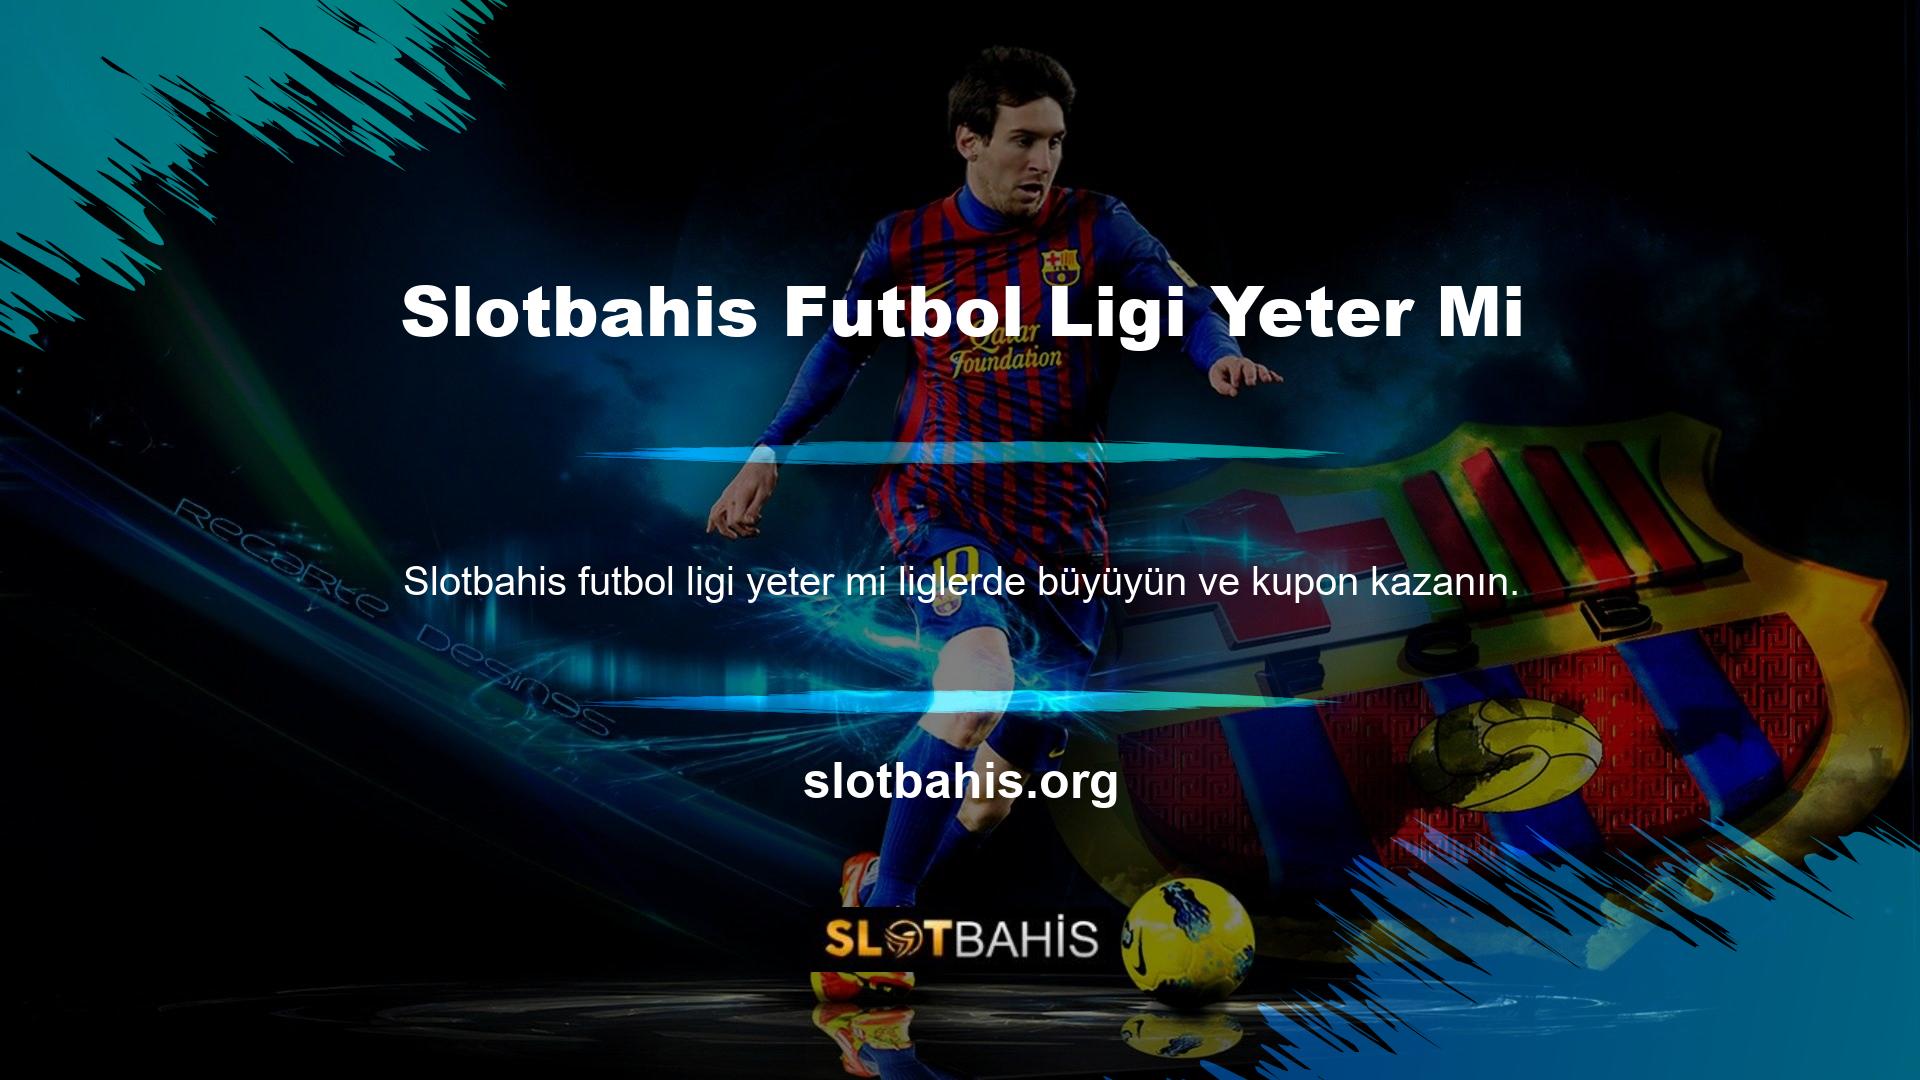 Uluslararası çevrimiçi oyun deneyimine sahip bahis şirketi, futbolseverlere dünyanın en iyi liglerine bahis oynama fırsatı sunuyor